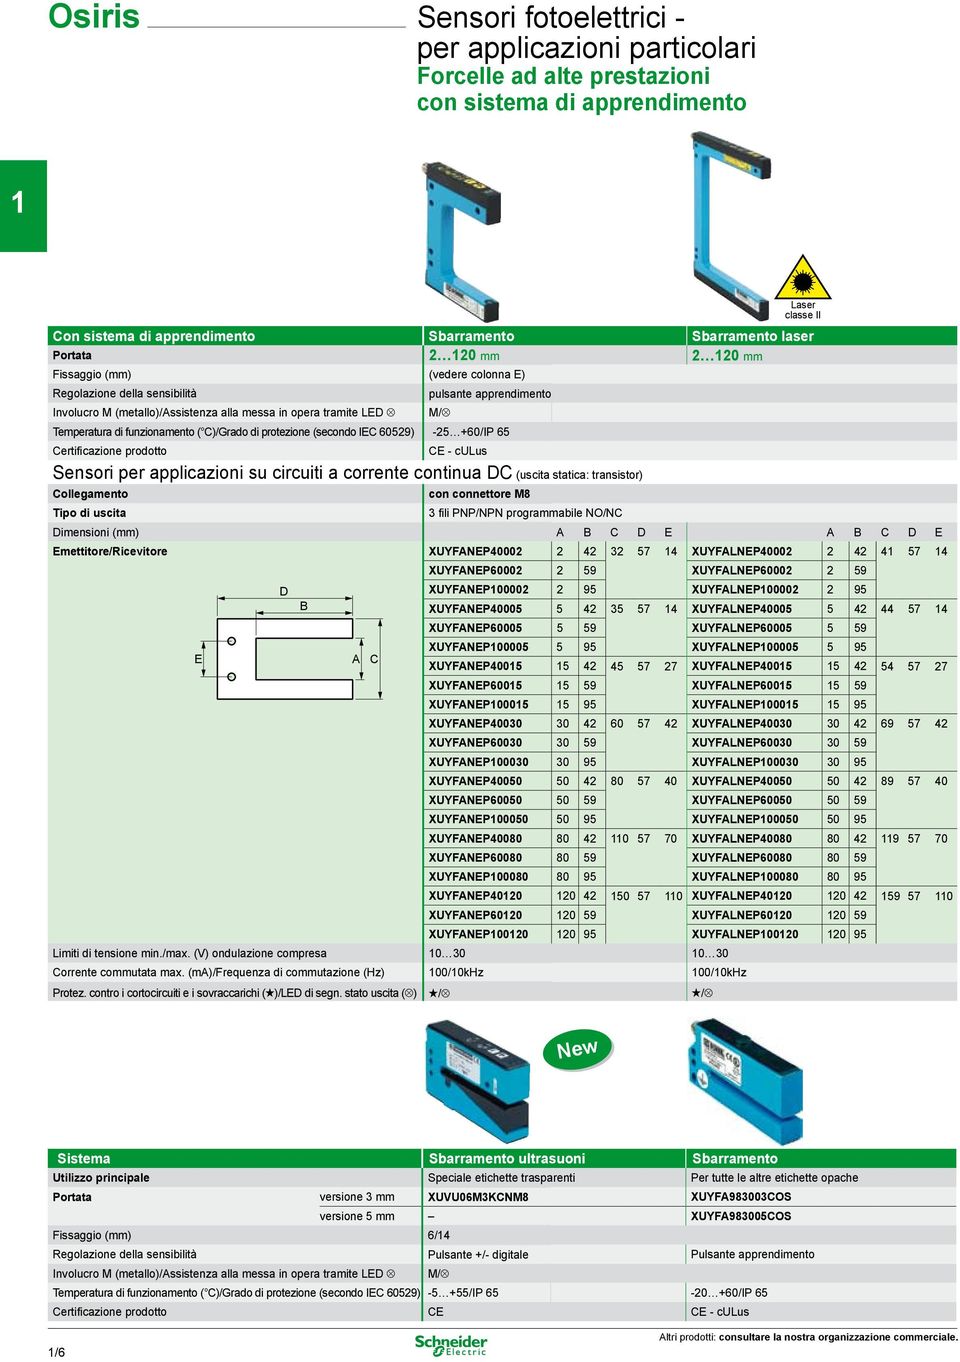 protezione (secondo IEC 0) - +0/IP Certificazione prodotto M/ CE - culus Sensori per applicazioni su circuiti a corrente continua DC (uscita statica: transistor) Collegamento Tipo di uscita con